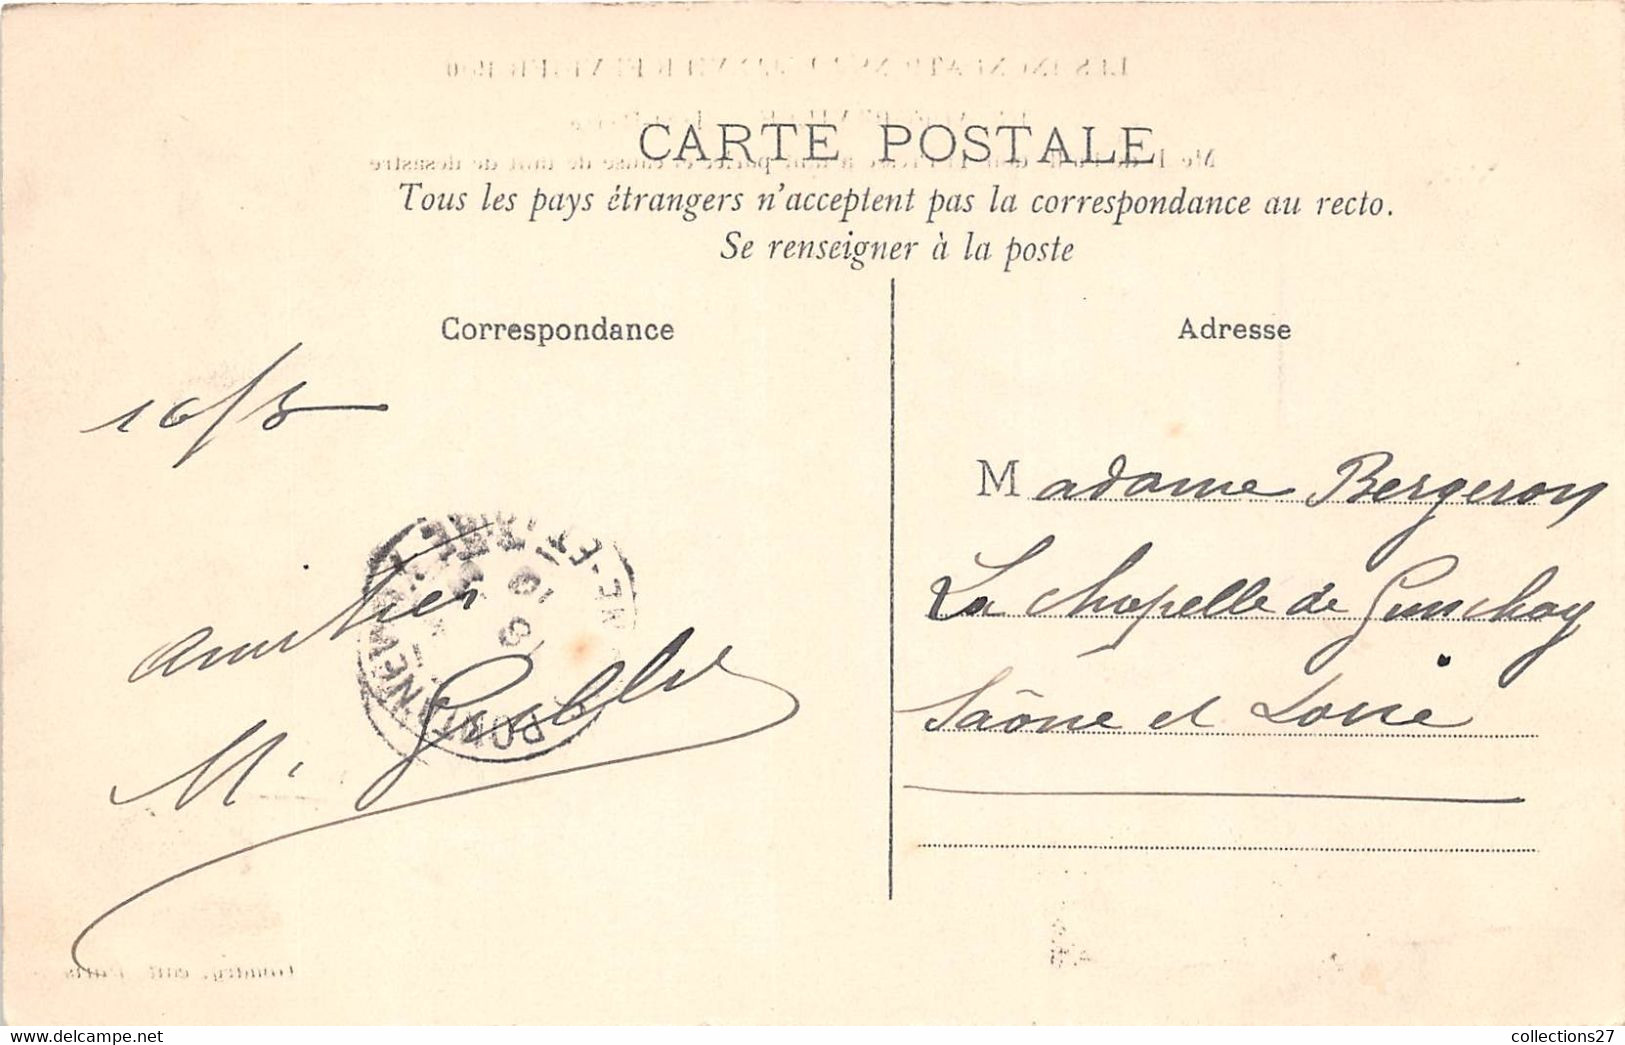 94-ALFORVILLE-LES INONDATION DE JANVIER FEVRIER 1910- ILE-SAINT-PIERRE- MEULE DE PAILLE DONT LA PRESSE A TANT PARLEE ... - Alfortville